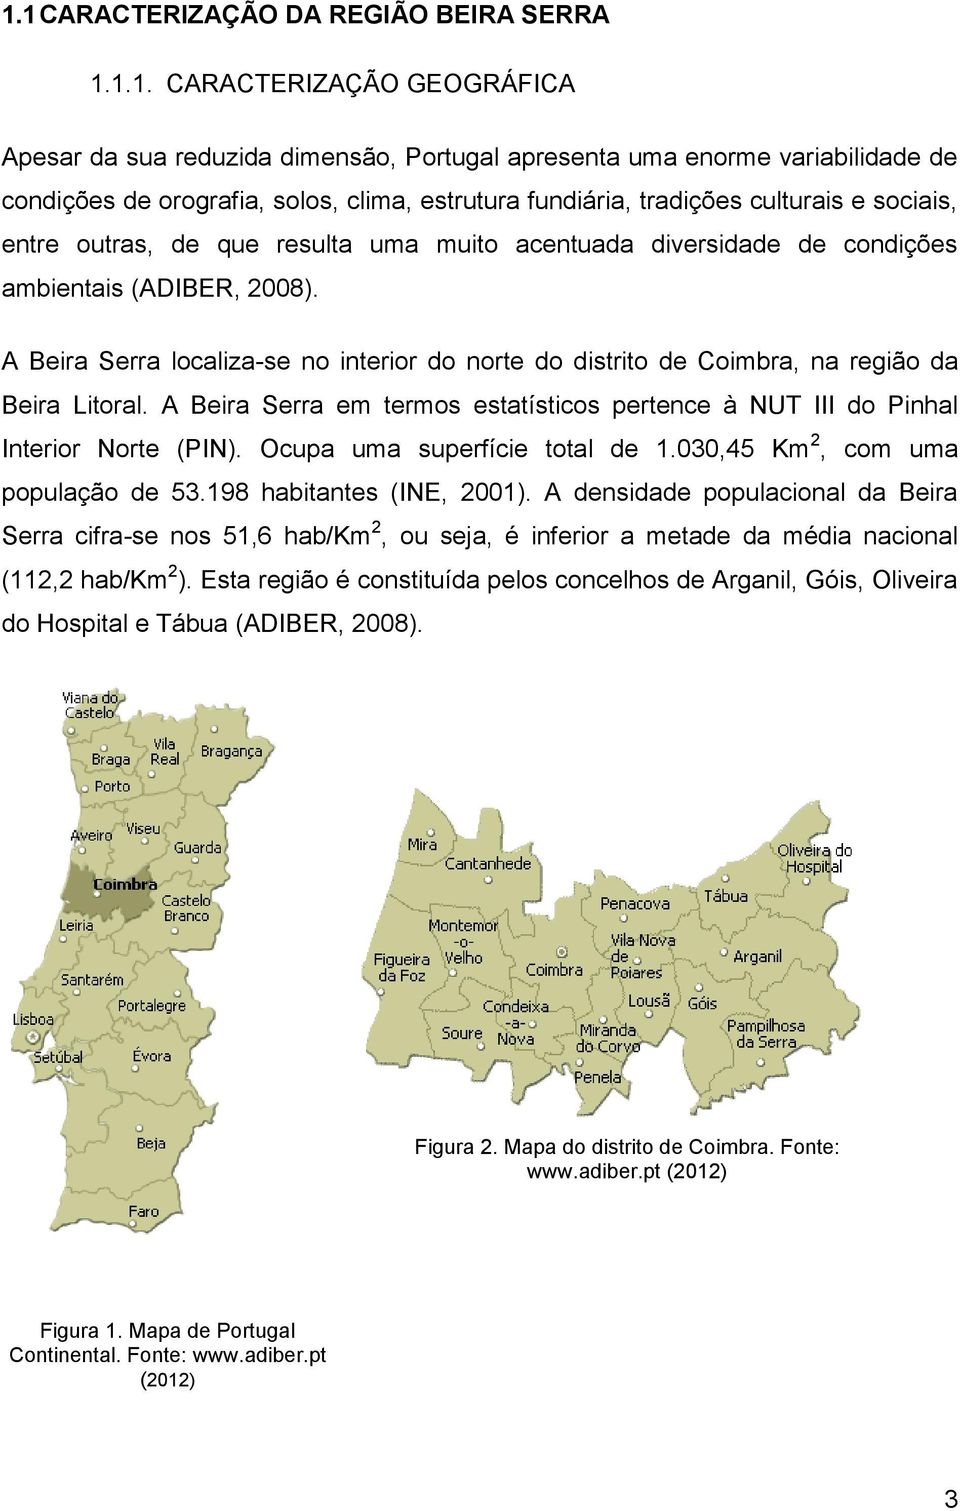 A Beira Serra localiza-se no interior do norte do distrito de Coimbra, na região da Beira Litoral. A Beira Serra em termos estatísticos pertence à NUT III do Pinhal Interior Norte (PIN).